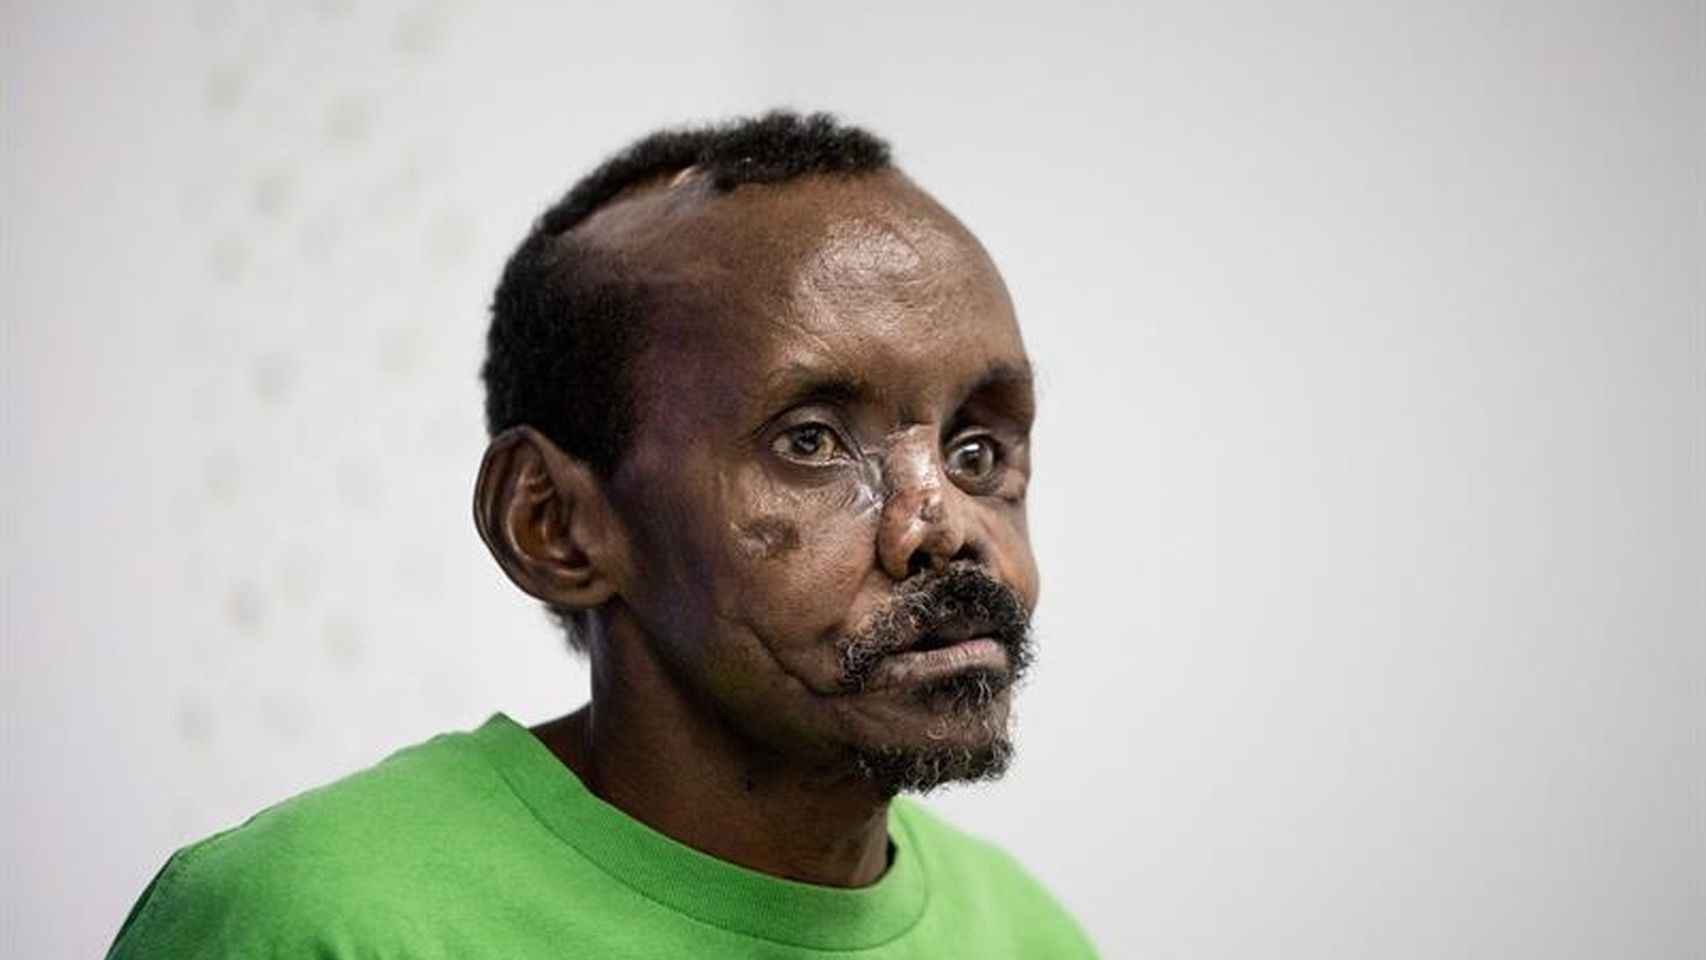 El pastor keniata Lonunuku, de 58 años, tras la reconstrucción parcial del rostro y la mano izquierda